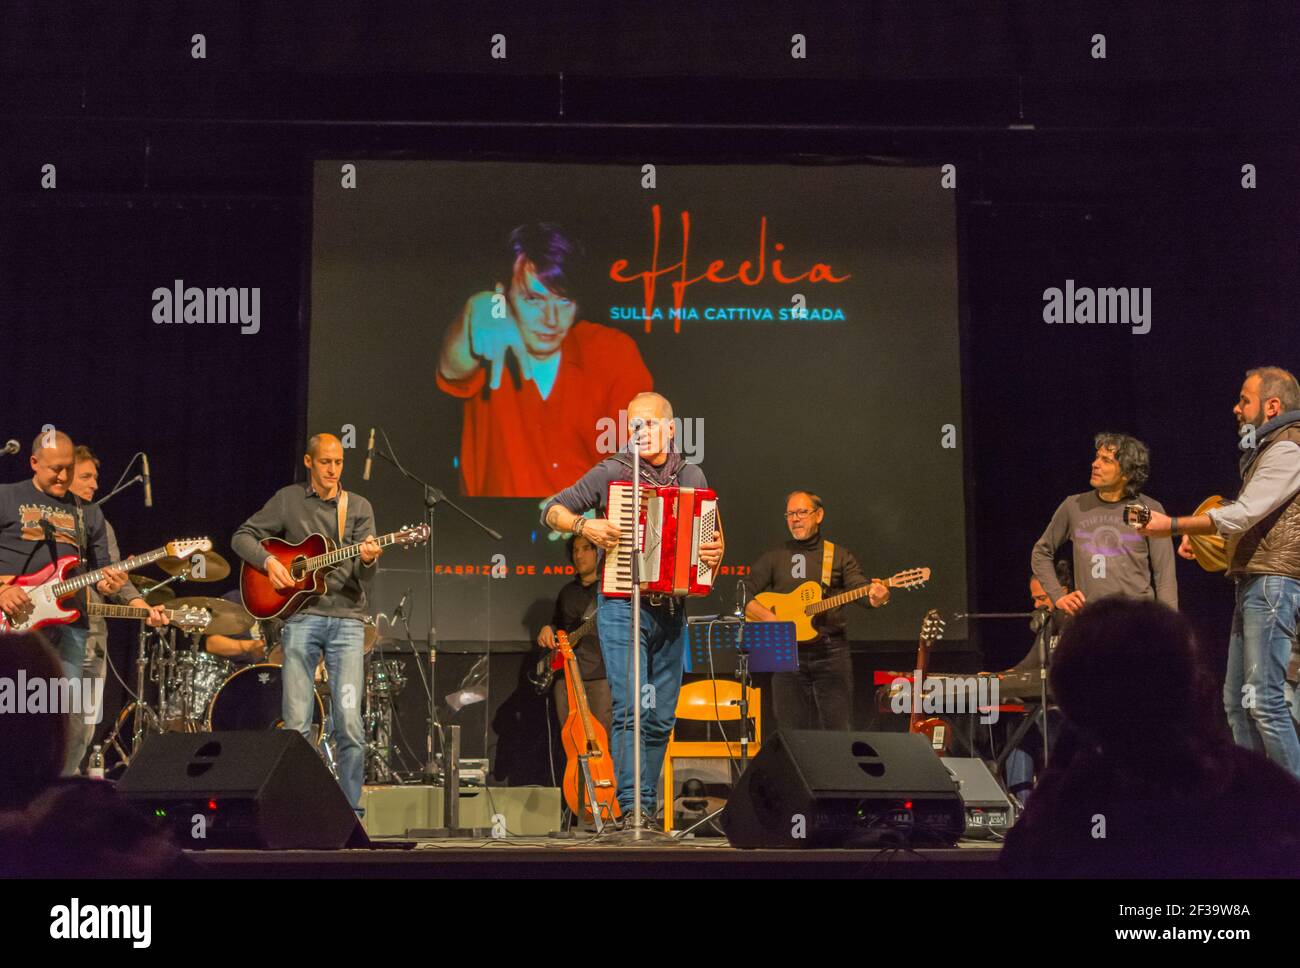 Représentation d'un groupe musical sur scène chantant la chanson de Fabrizio DeAndrè à Bolzano, dans le nord de l'Italie Banque D'Images